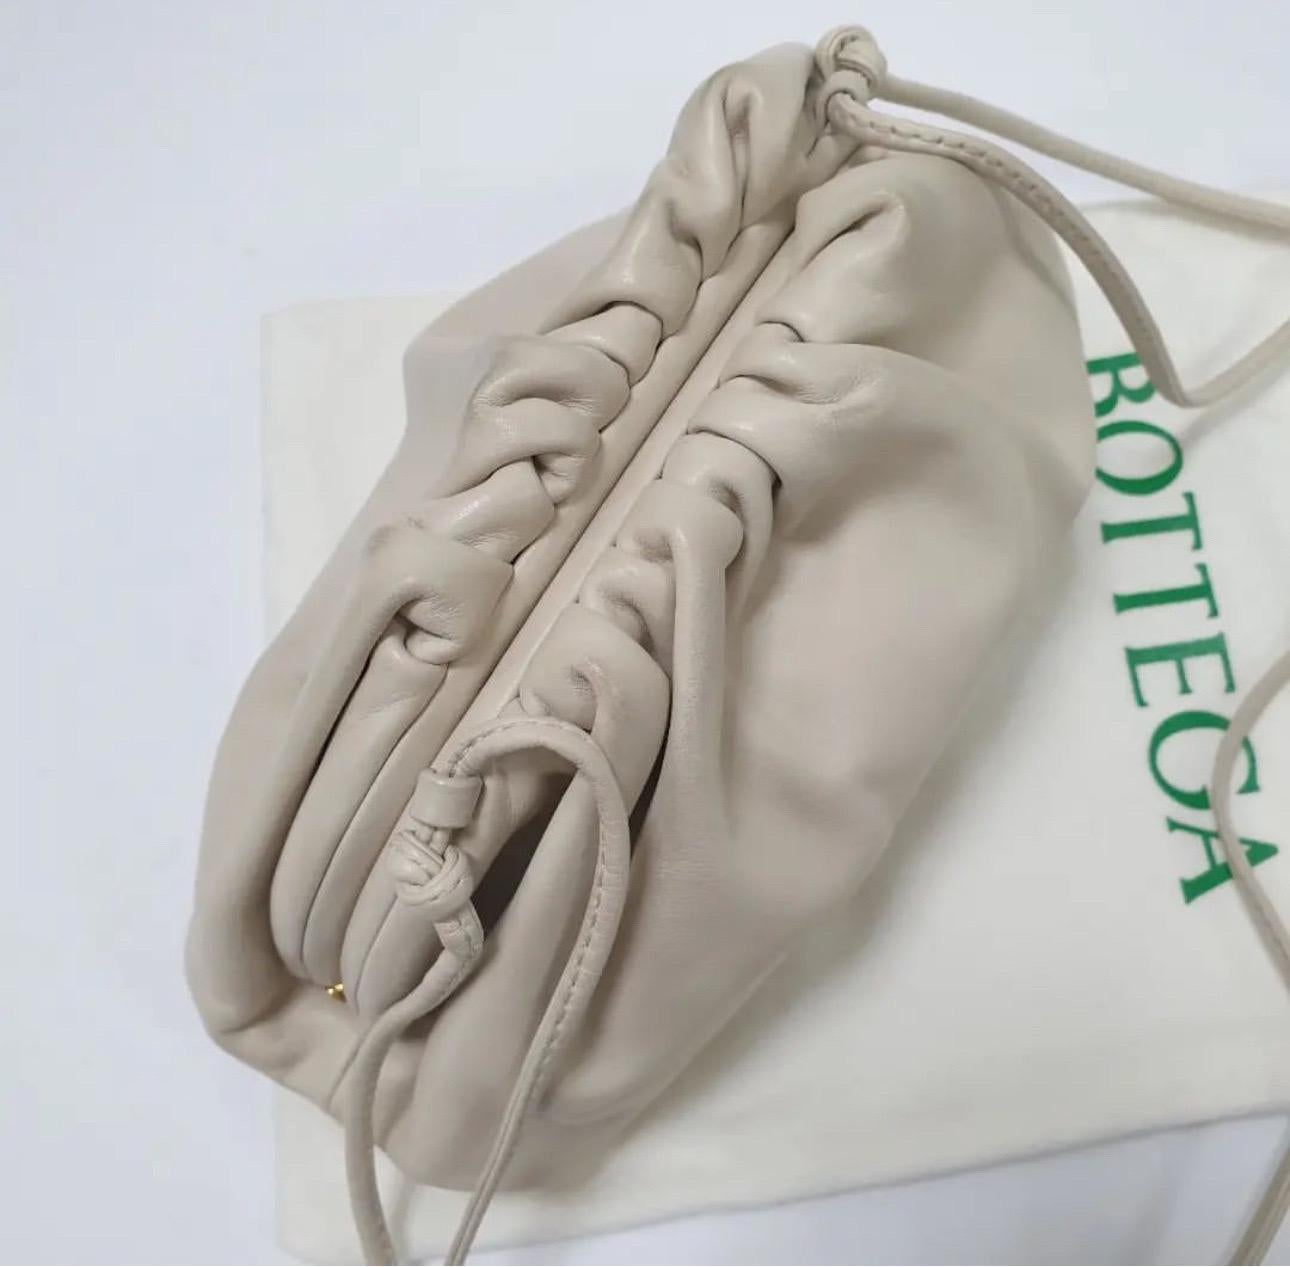 Pour Bottega Veneta, il est facile de combiner une esthétique minimale avec des nuances modernes. La pochette Teen Pouch est en cuir beige. Il a une construction souple avec des fronces sur l'empeigne. Il est très agréable de le glisser sous le bras